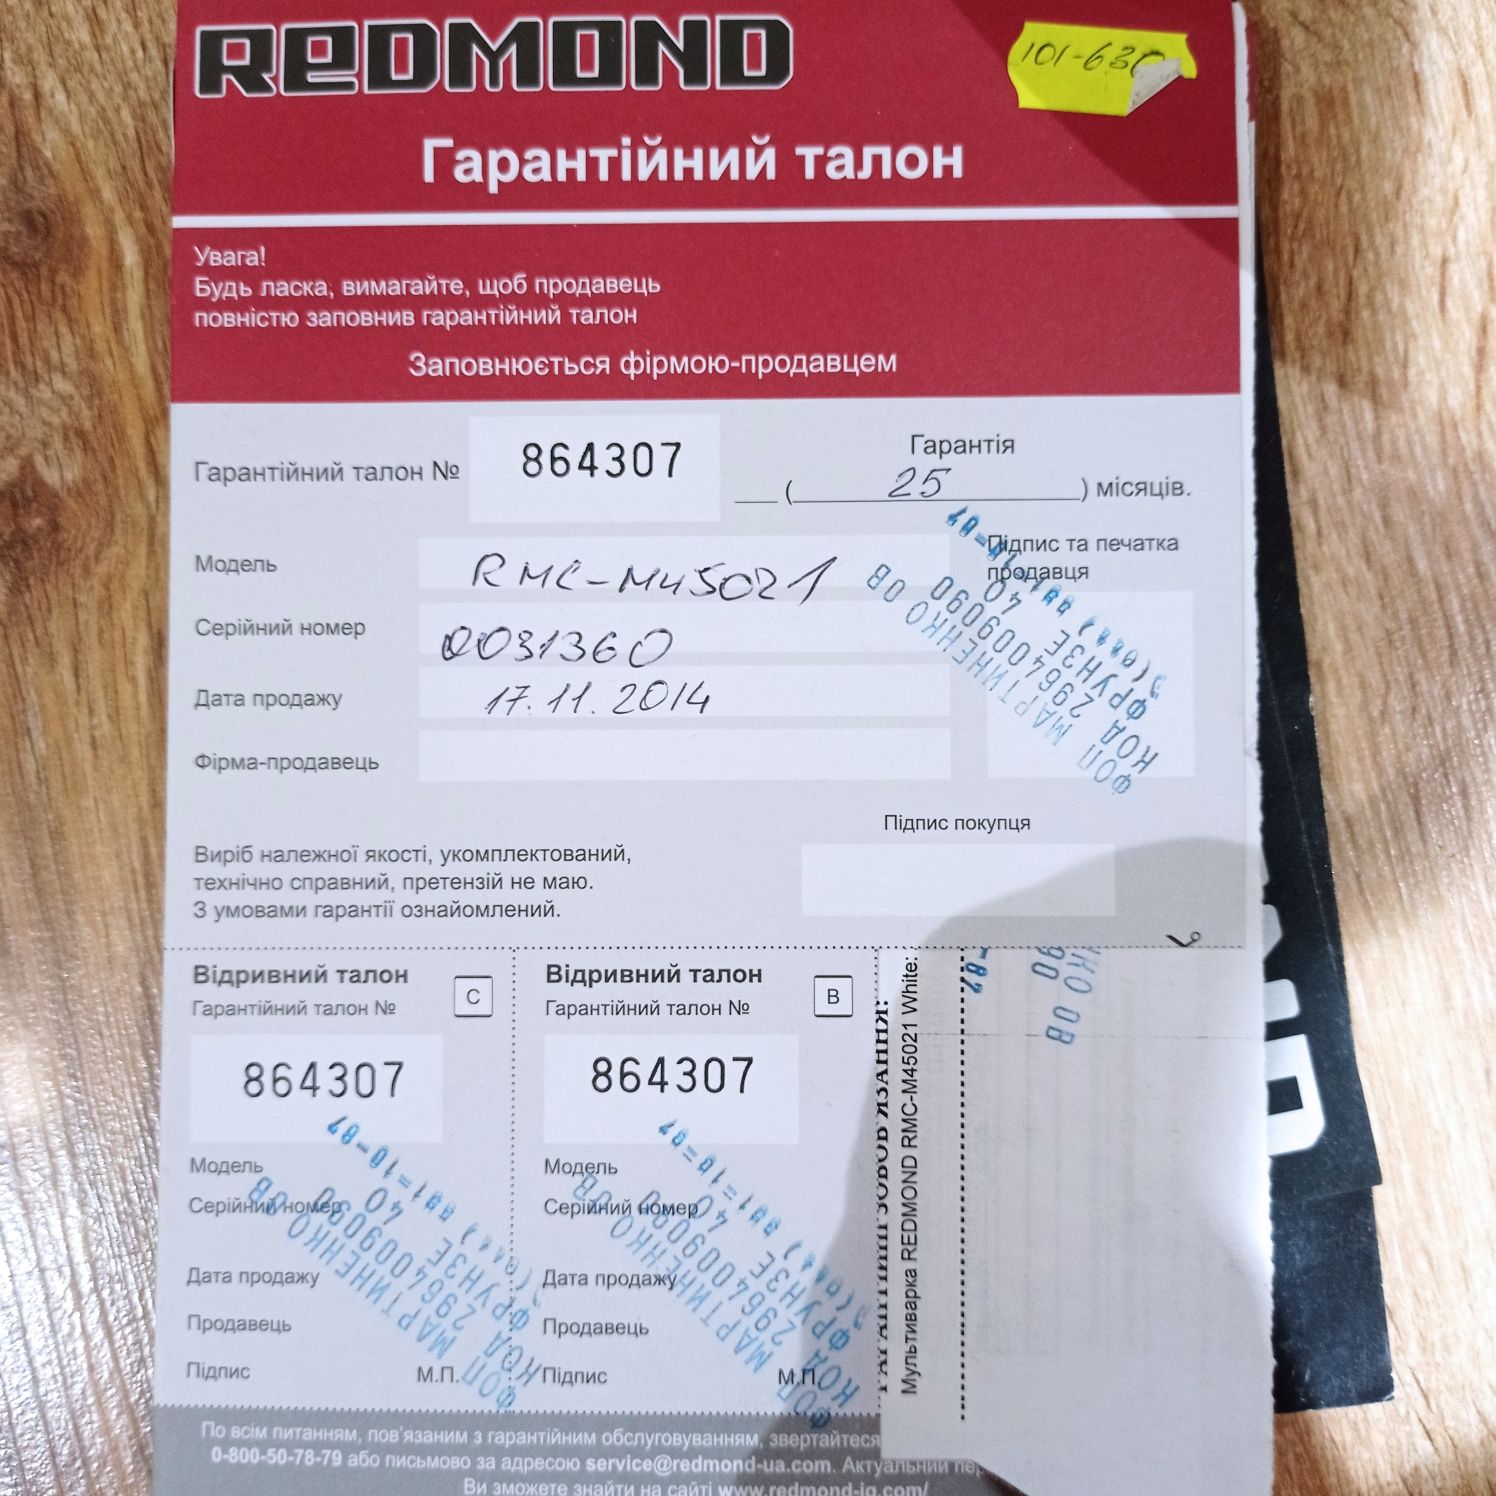 Мультиварка REDMOND RMC-M45021